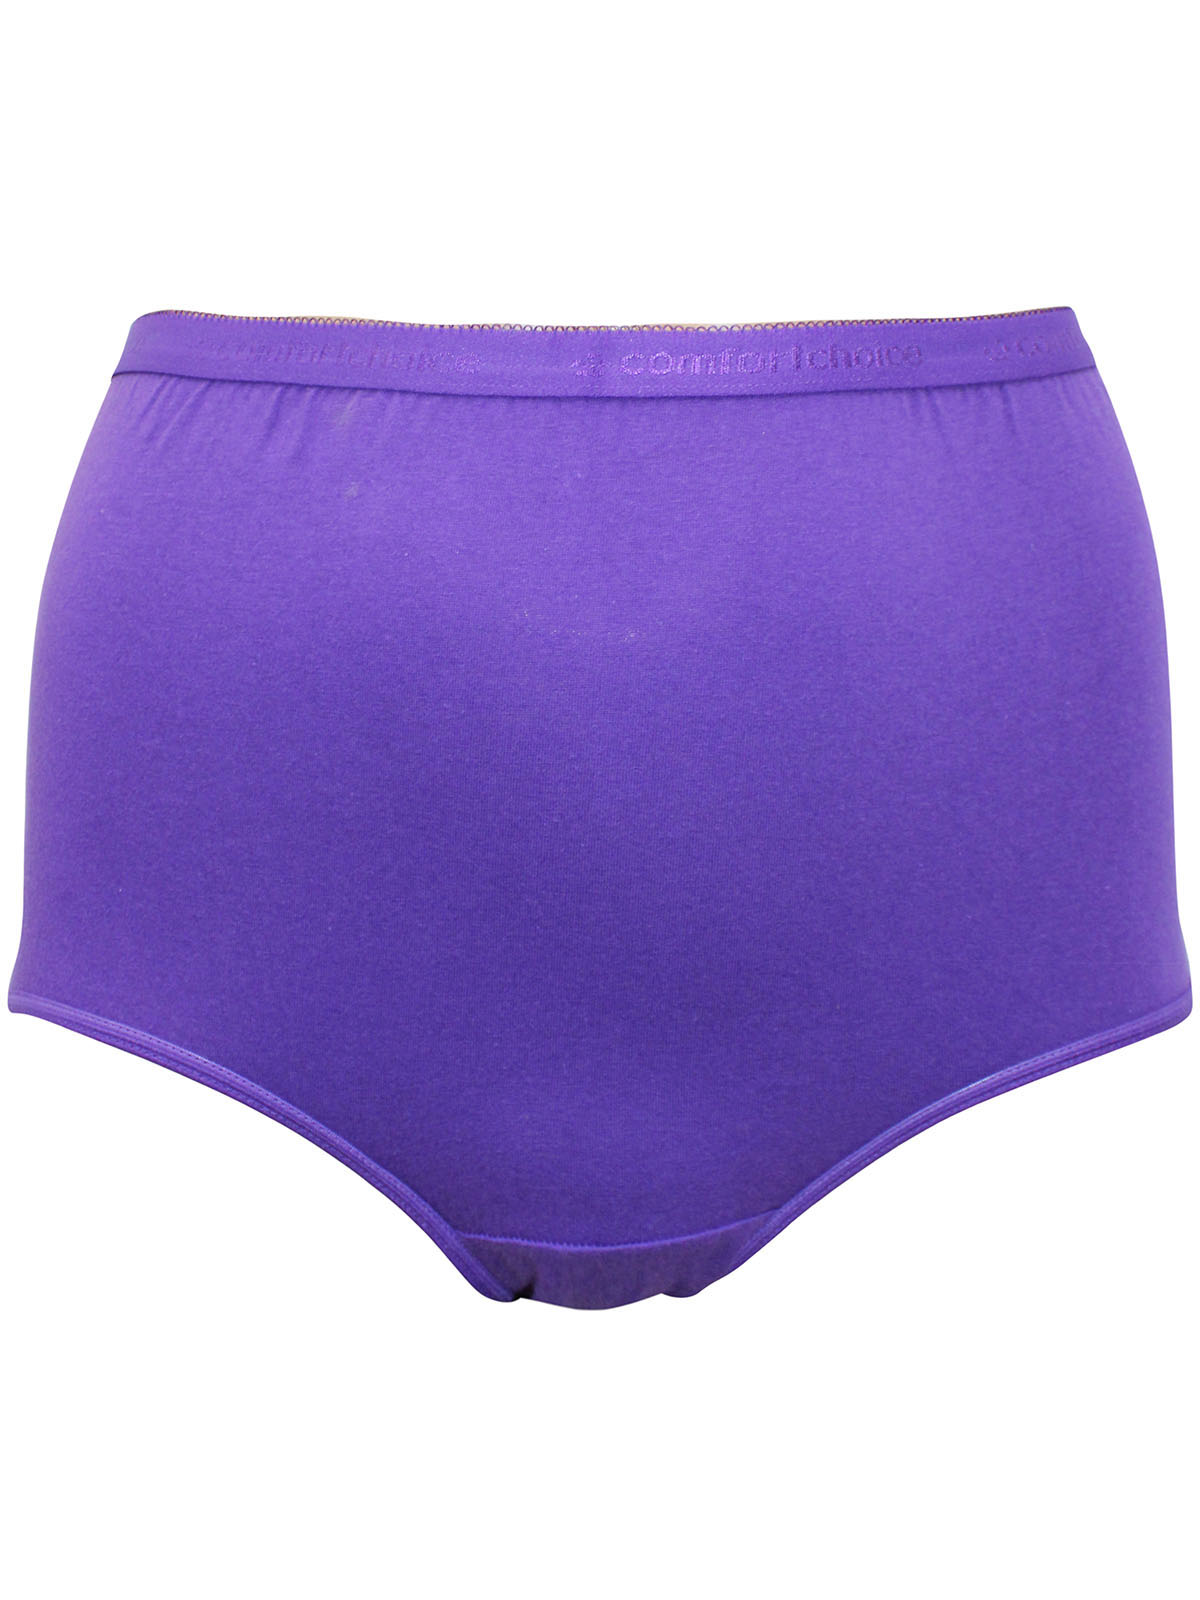 Comfort Choice Women's Plus Size Cotton Brief 10-pack - 16, Purple : Target